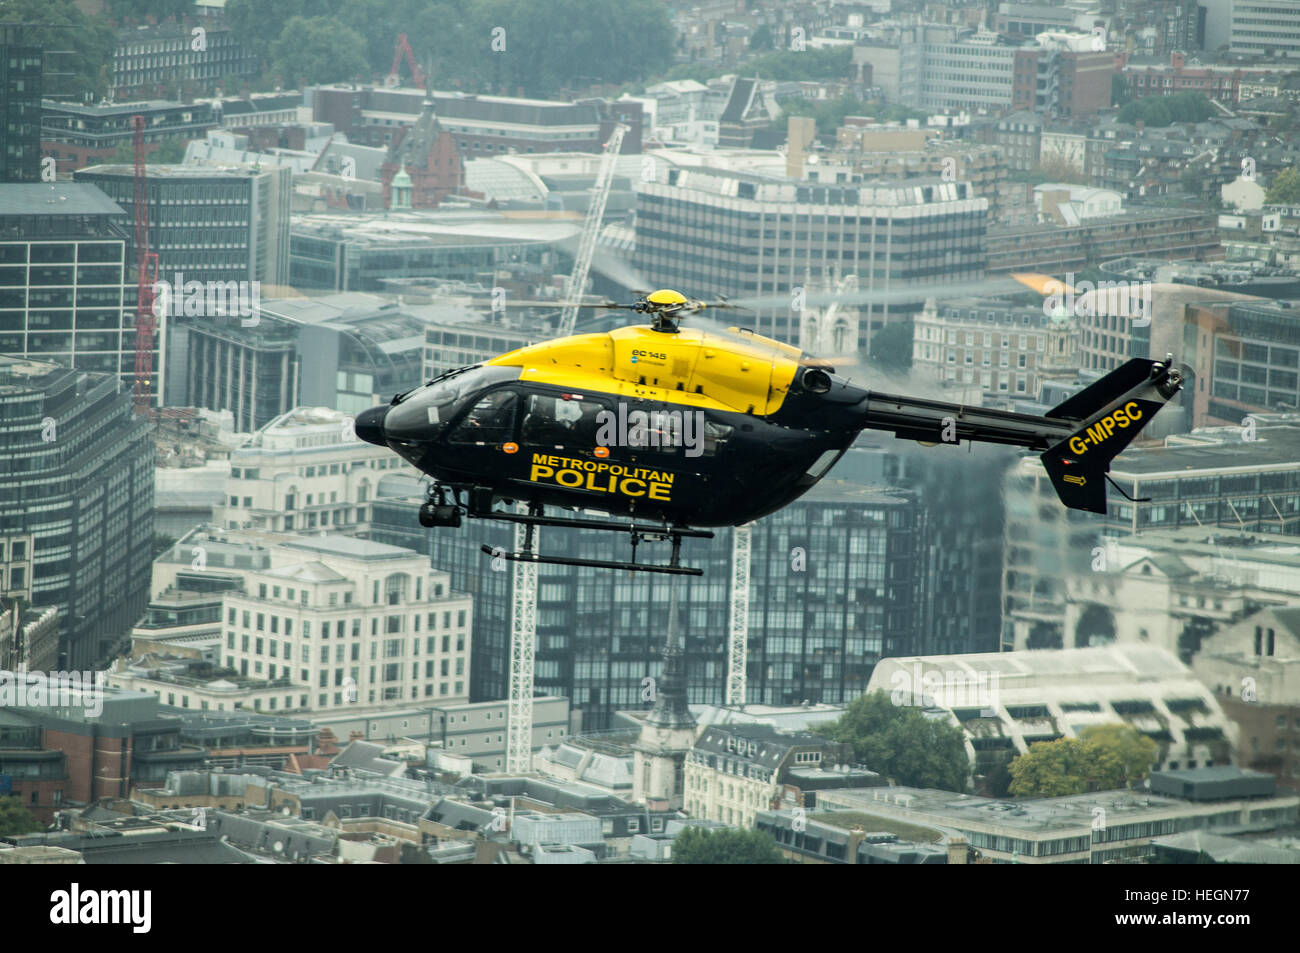 Helicóptero de la policía metropolitana de Londres sobre Londres. Foto de stock